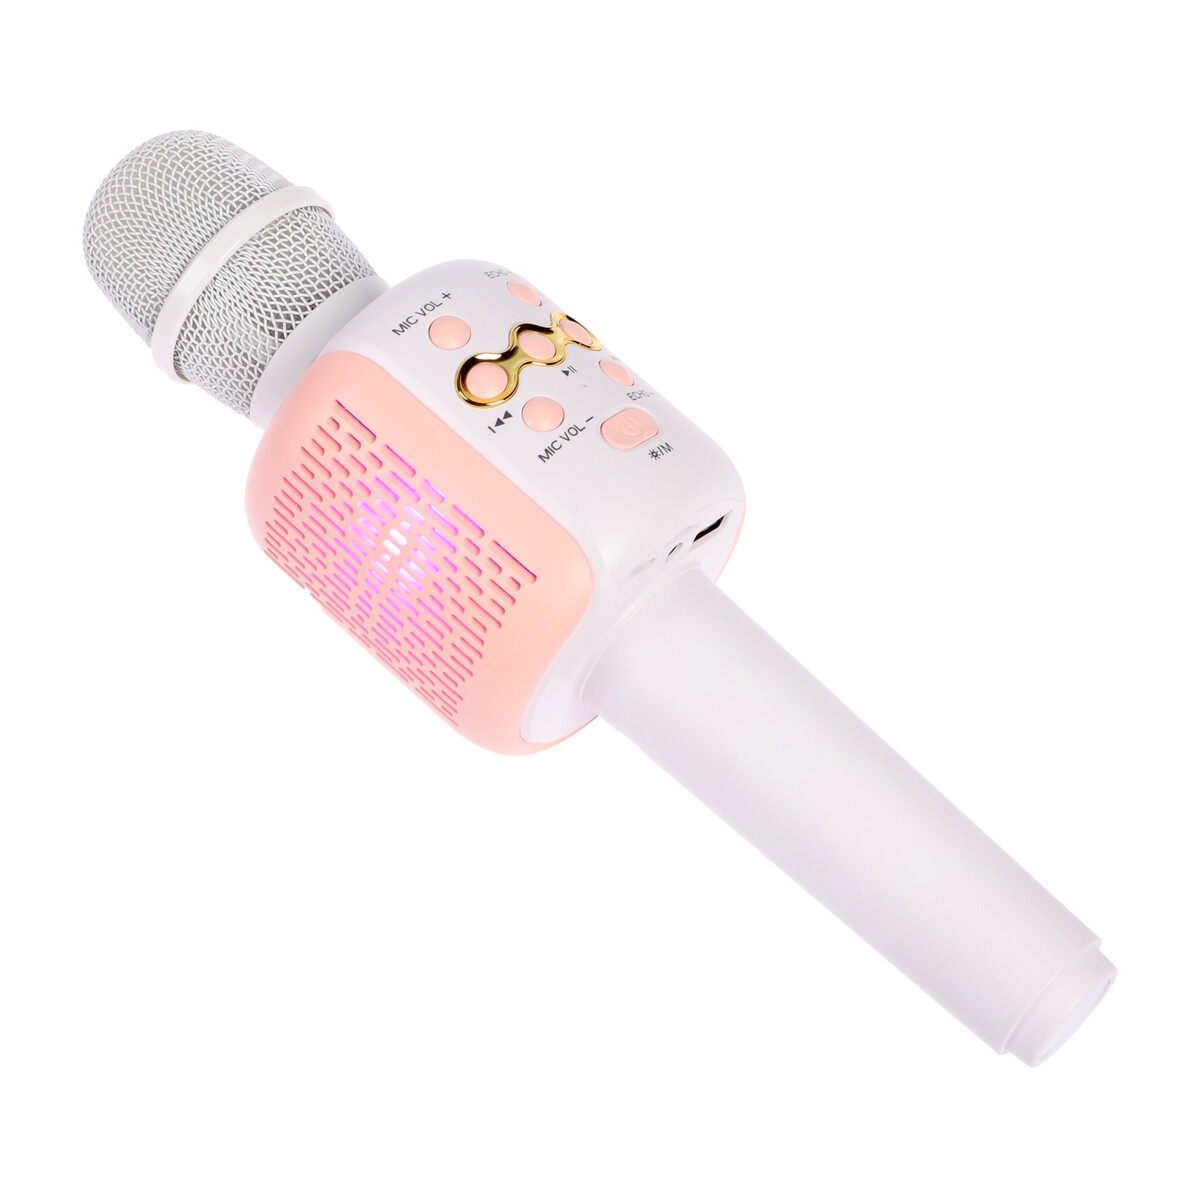 Портативный караоке микрофон, 5 вт, 1200 мач, led, розово-белый